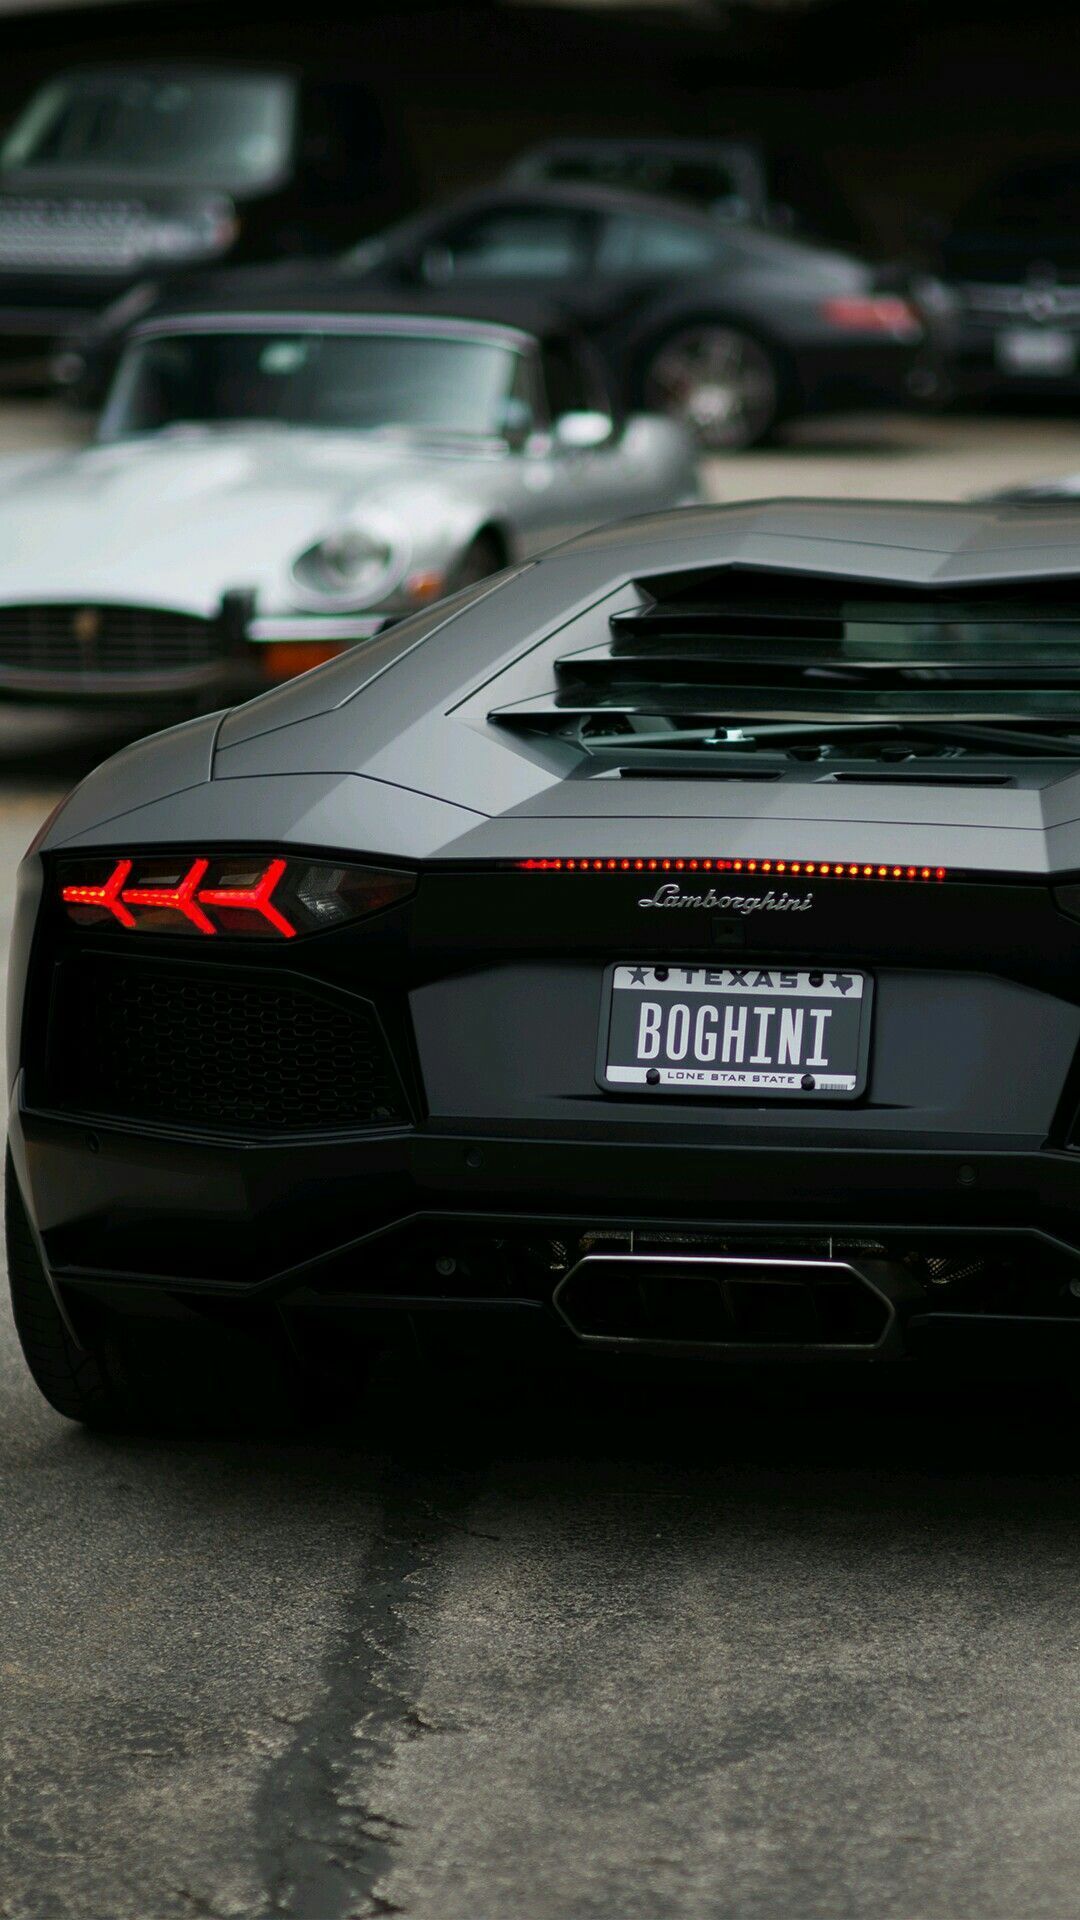 Nice Cars – There are Pagani Huayra vehicles, Lamborghini, Hennessey Venom, Koen…